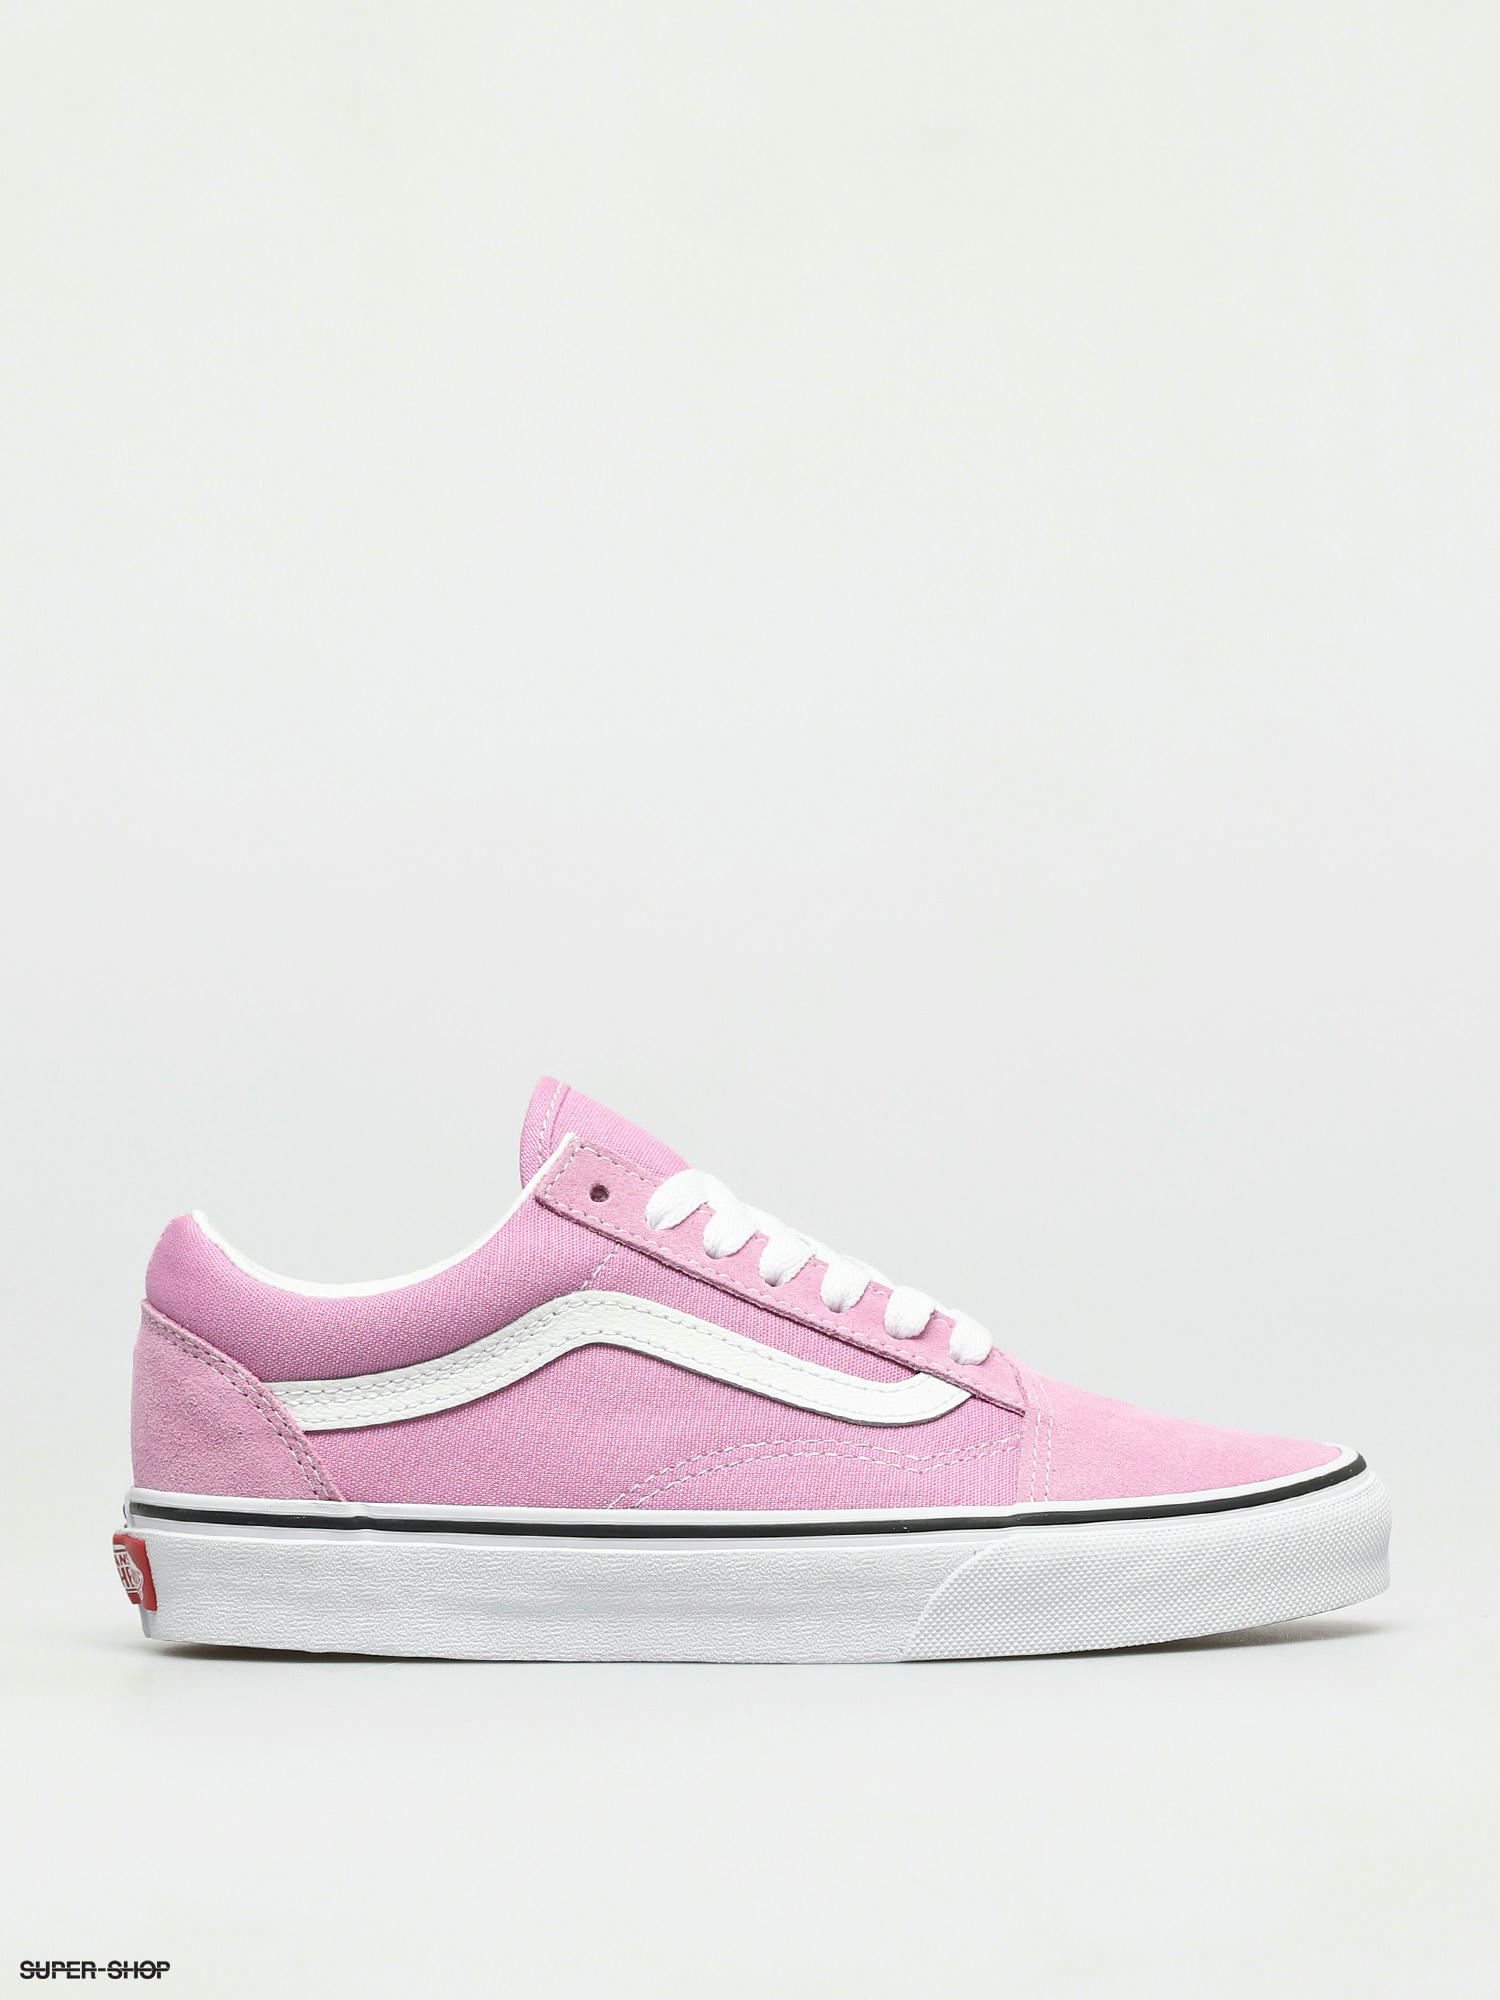 vans old skool shoes pink